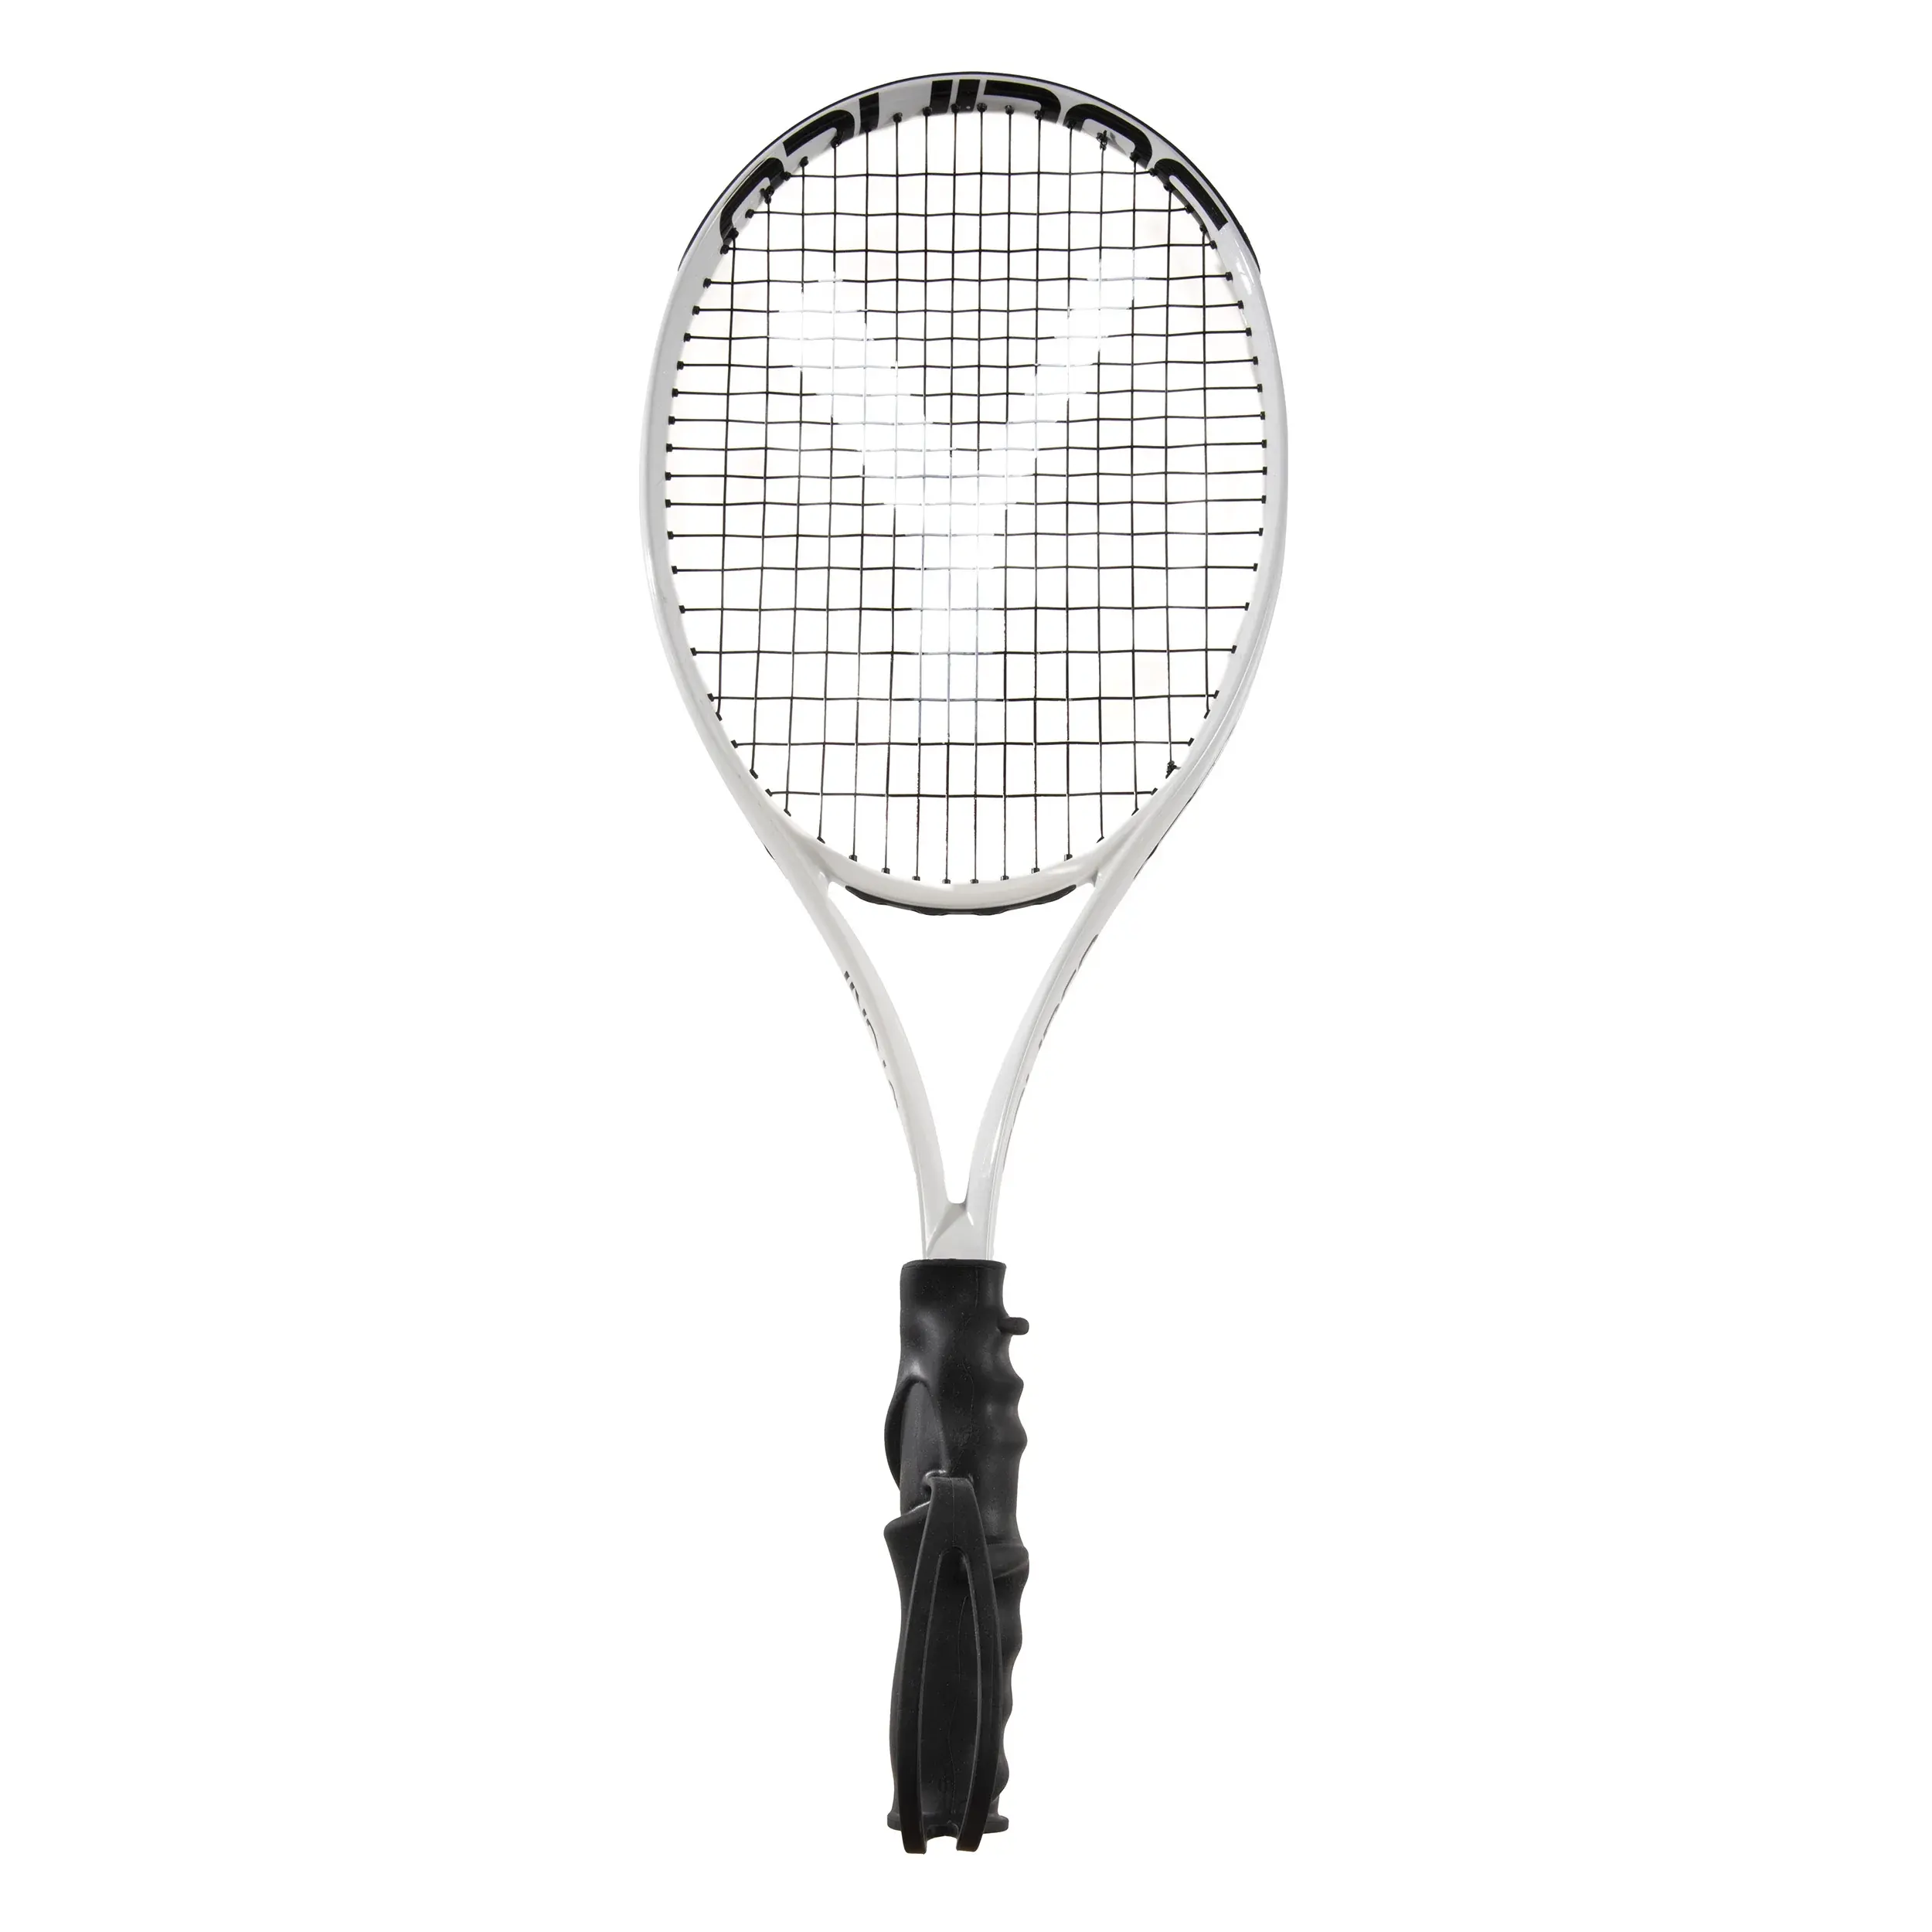 Pro raquete preto Tennis nível de entrada para adulto com um aperto ergonómico para a aprendizagem, treinamento e treinamento